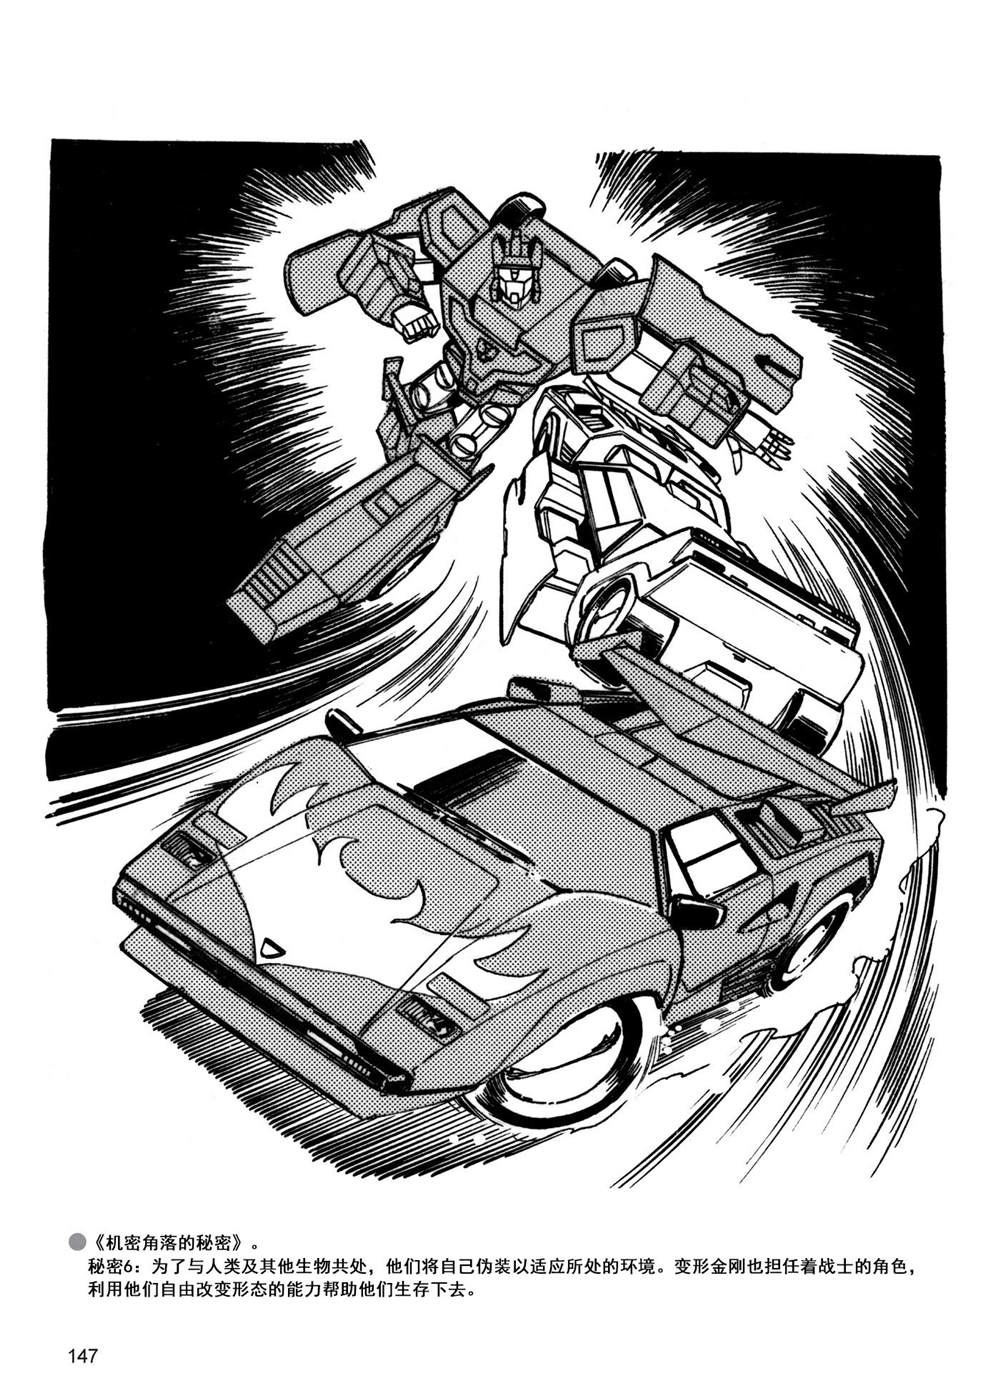 變形金剛日版G1雜誌插畫 - 戰鬥吧！超機械生命體變形金剛：勝利之鬥爭 - 4